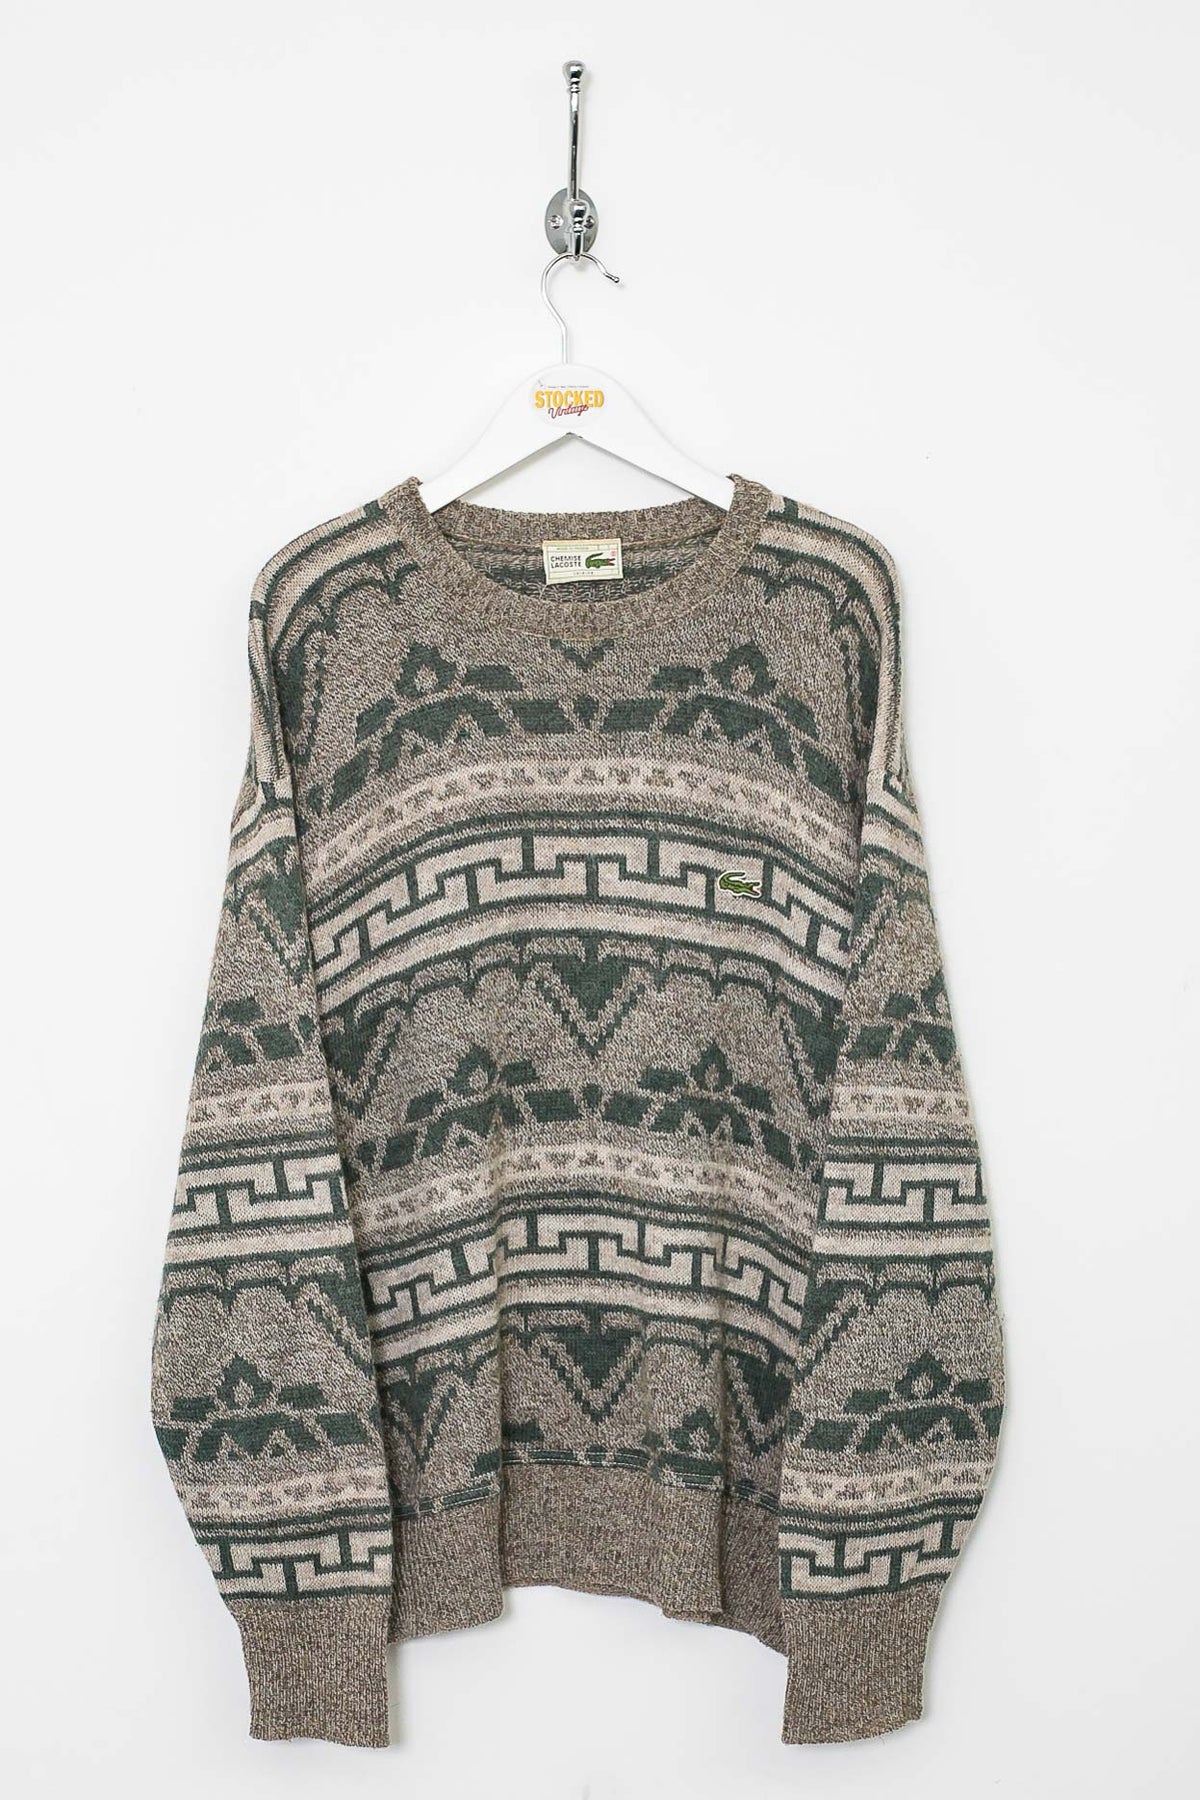 90s Lacoste Knit Sweatshirt (L)